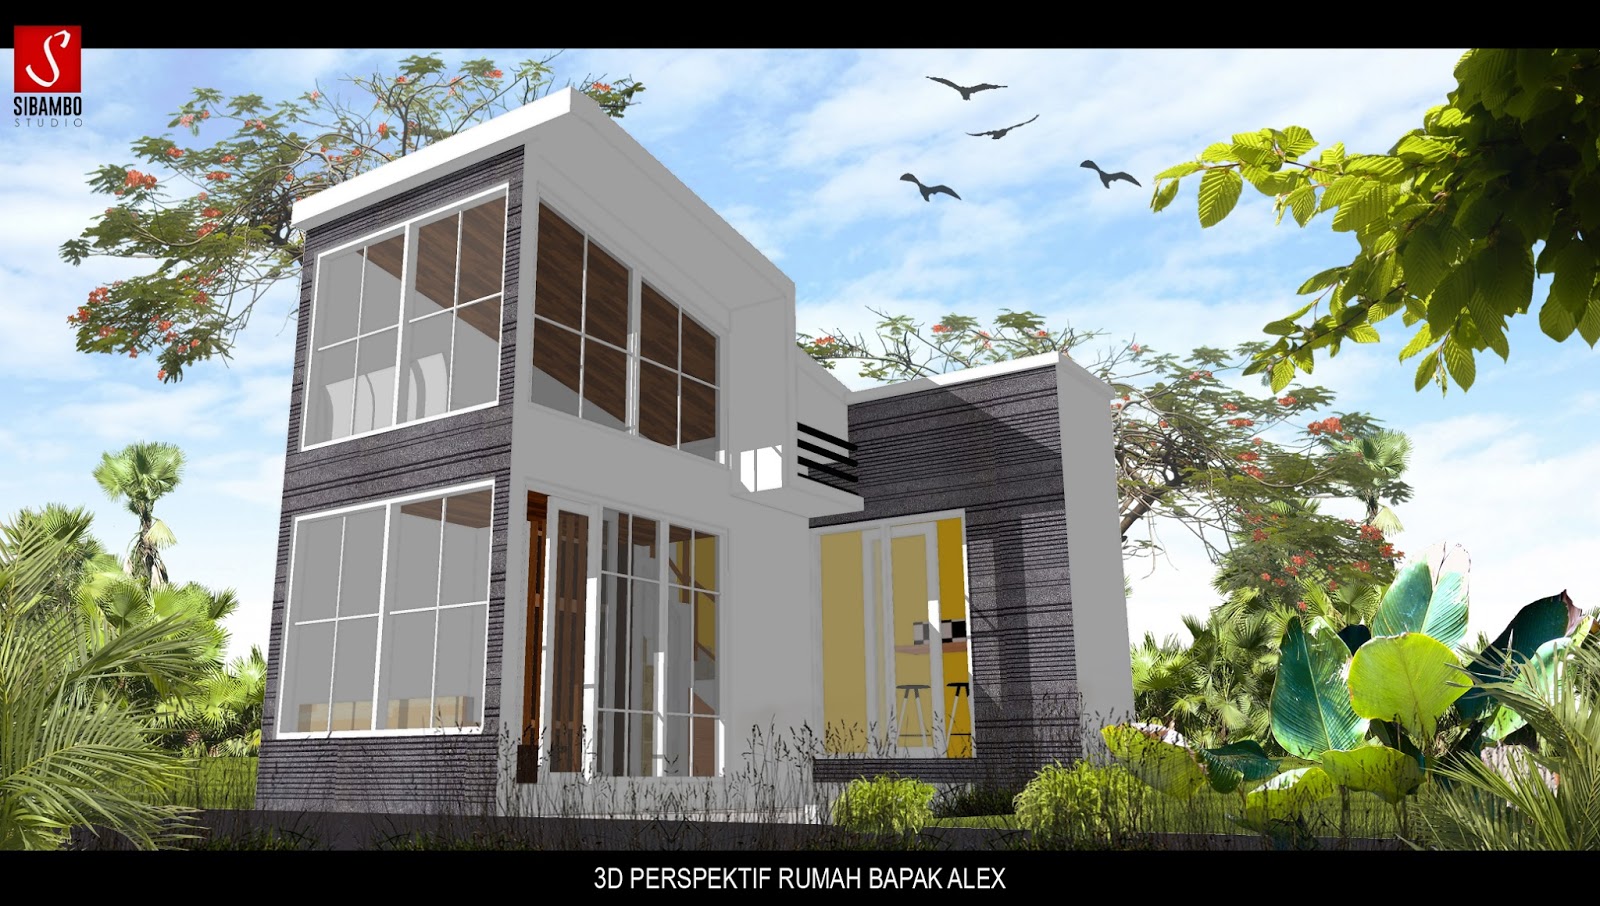 Rumah Mungil Di Lahan 5x5 M Bpk Alex Malang Sibambo